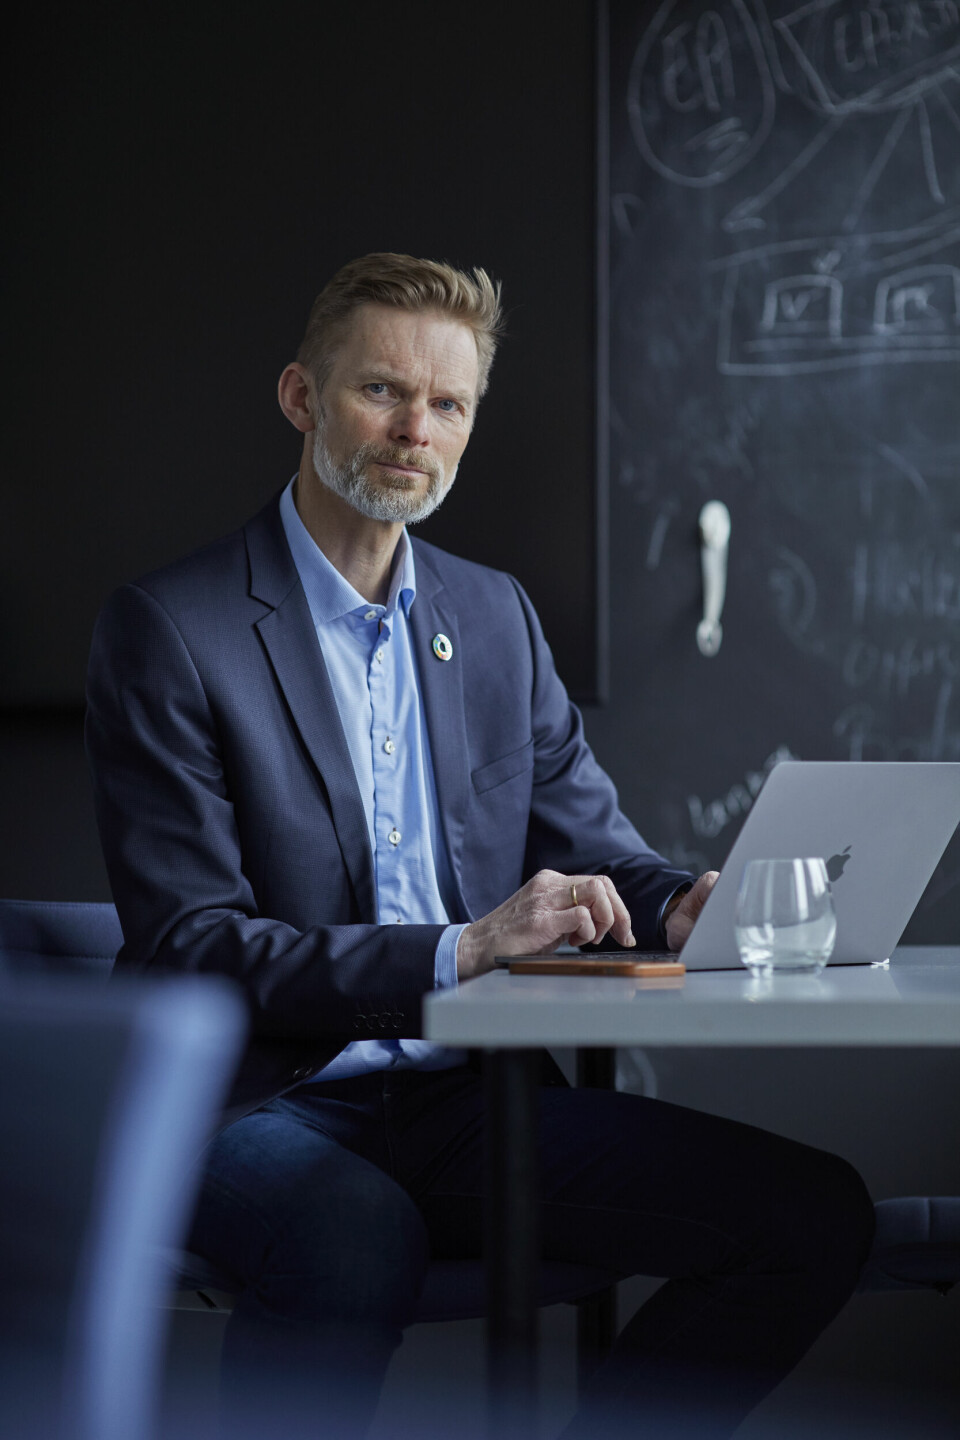 SAMARBEID: – Ingen kan møte utfordringene i det digitale rom alene, mener administrerende direktør Øyvind Husby i IKT-Norge. (Foto: Veslemøy Vråskar)